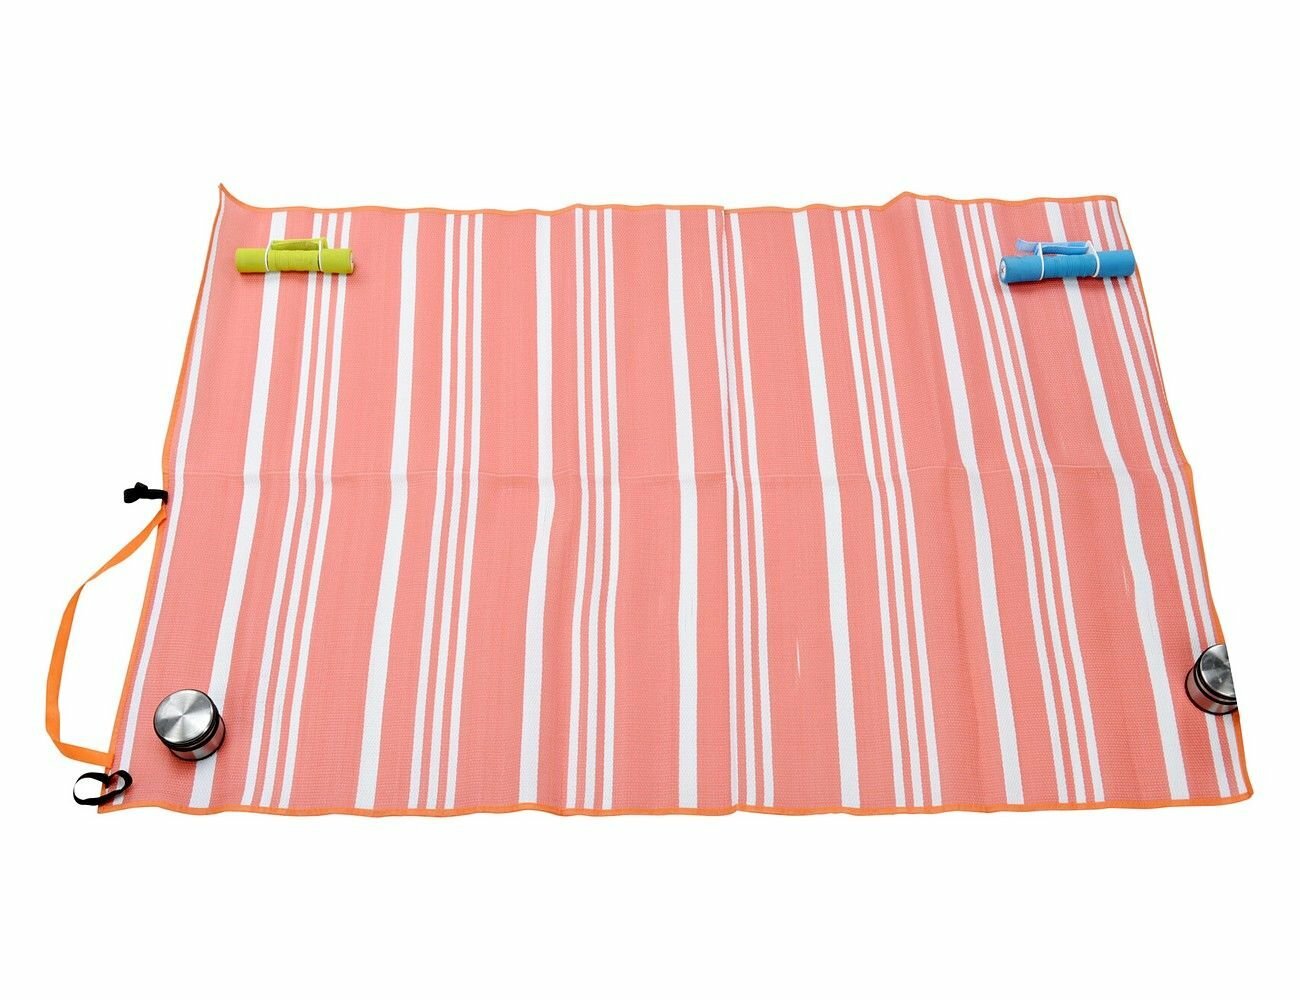 Пляжный коврик марэ брайт, розовый, полипропилен и текстиль, 180х120 см, Koopman International 836300560-1